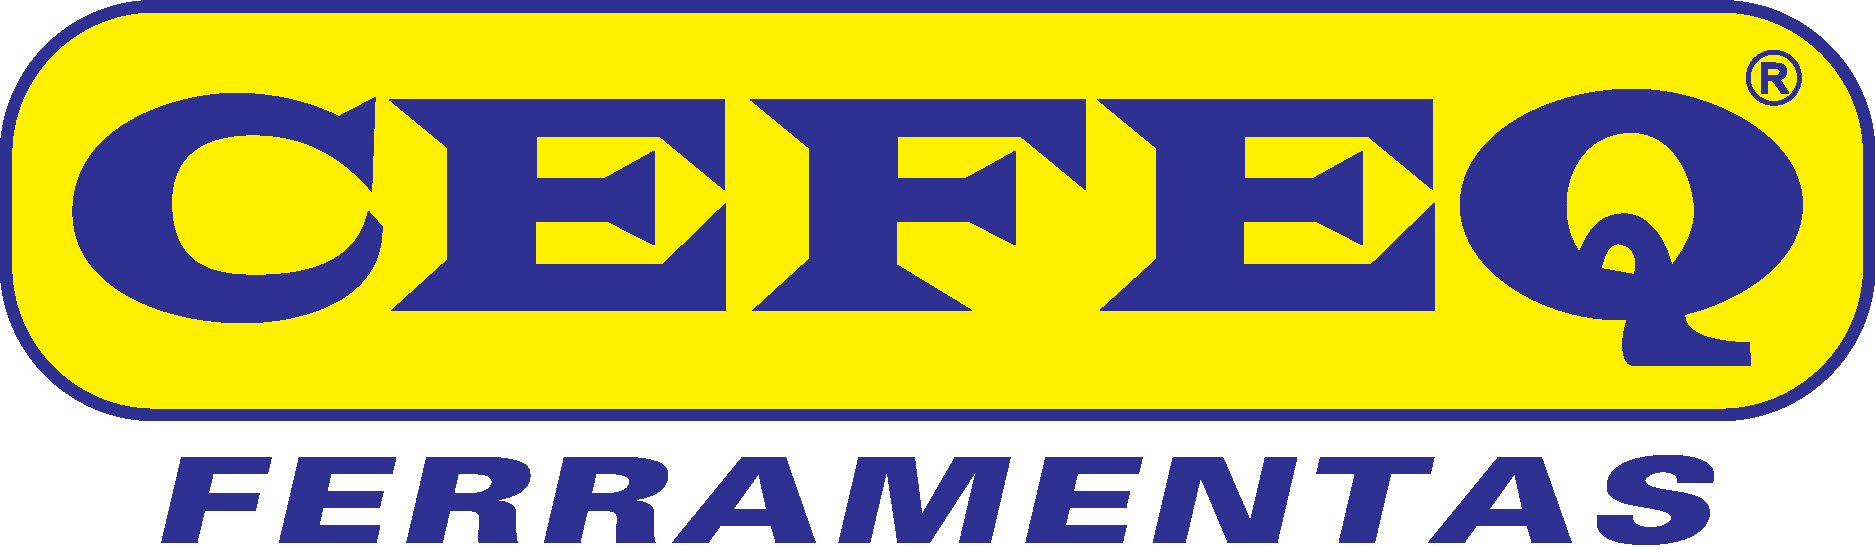 Cefeq Ferramentas Logo Vector